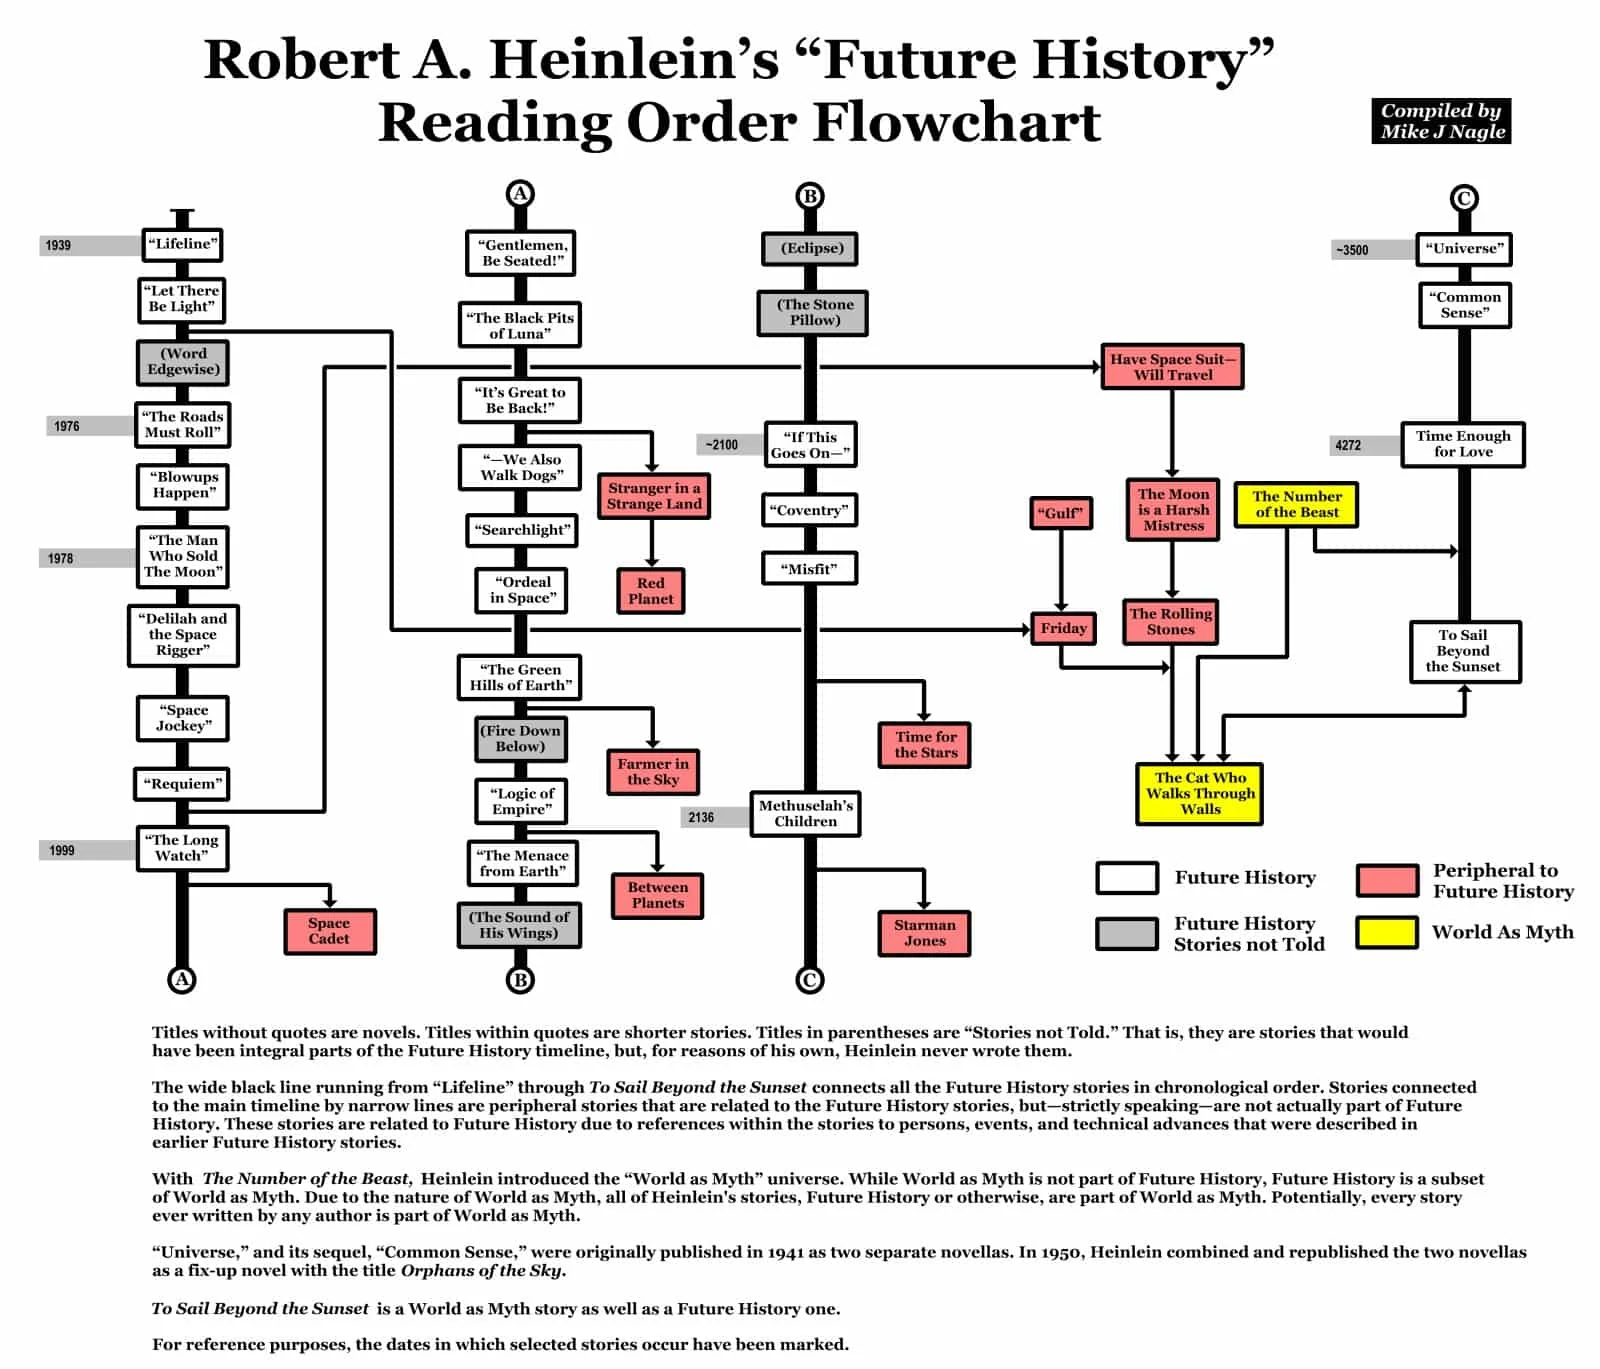 Orden de lectura de los relatos incluidos en La Historia del Futuro de Robert A. Heinlein